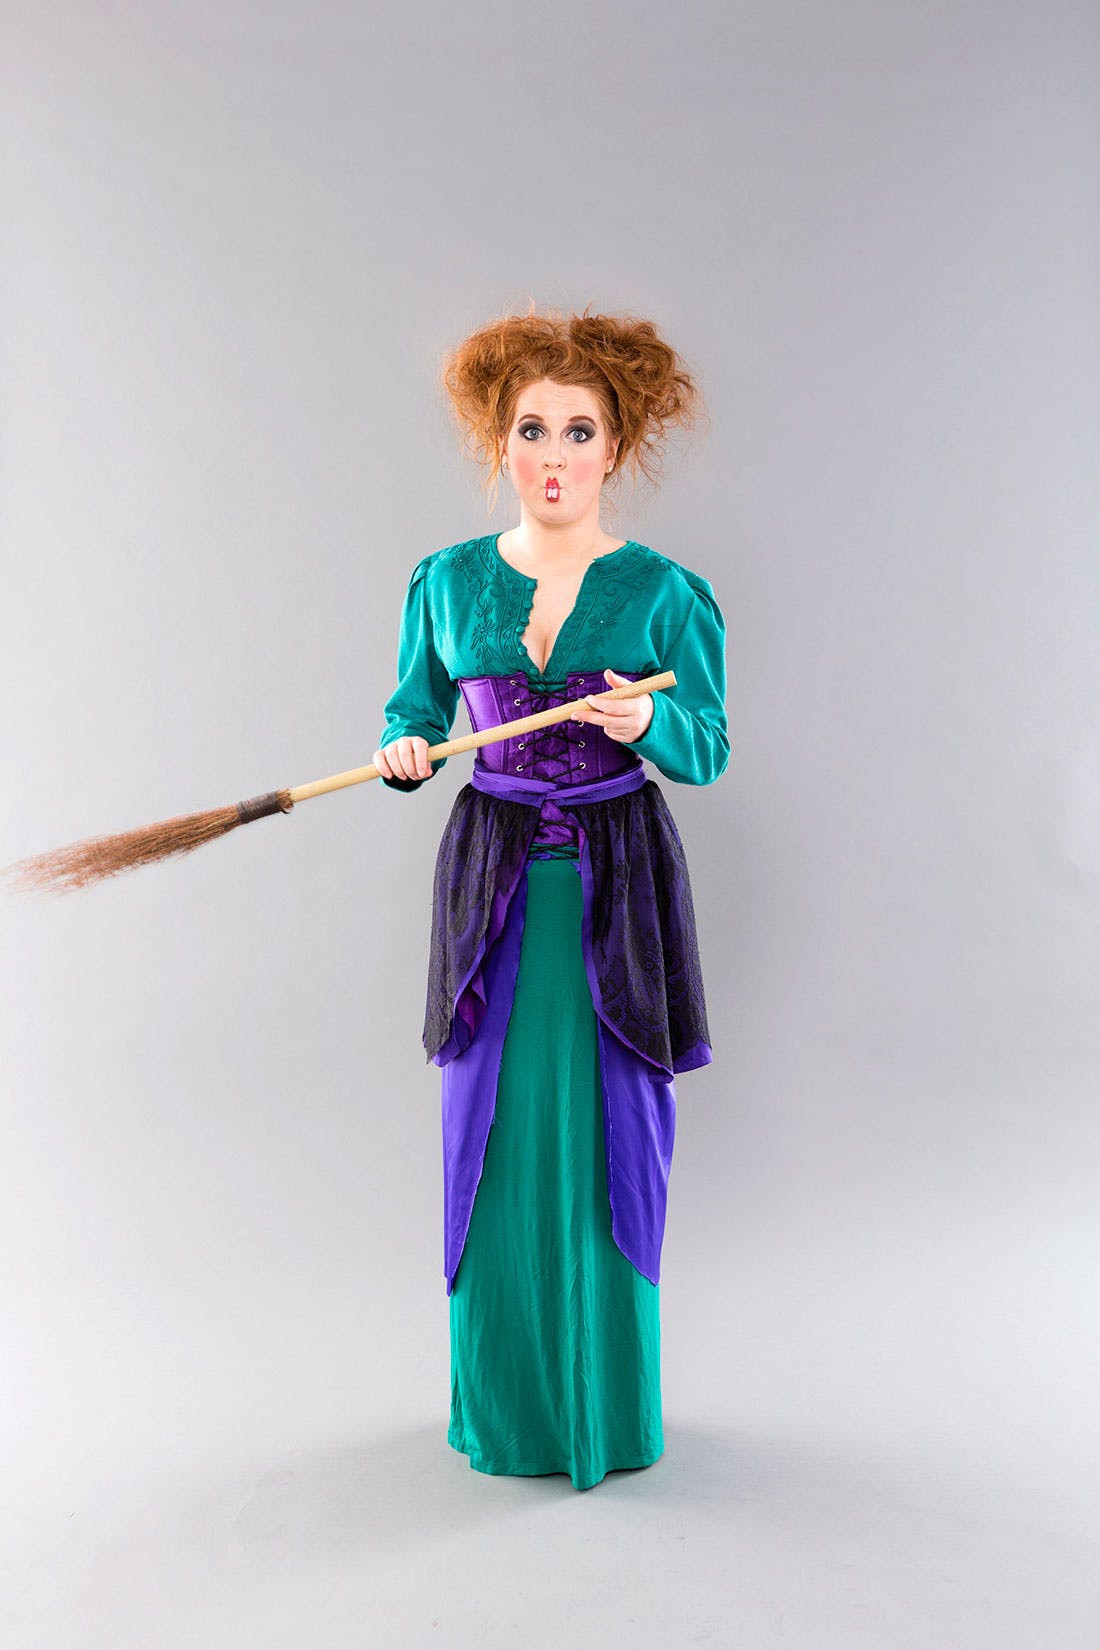 DIY Hocus Pocus Costumes
 DIY This Hocus Pocus Costumes for Your Main Witches